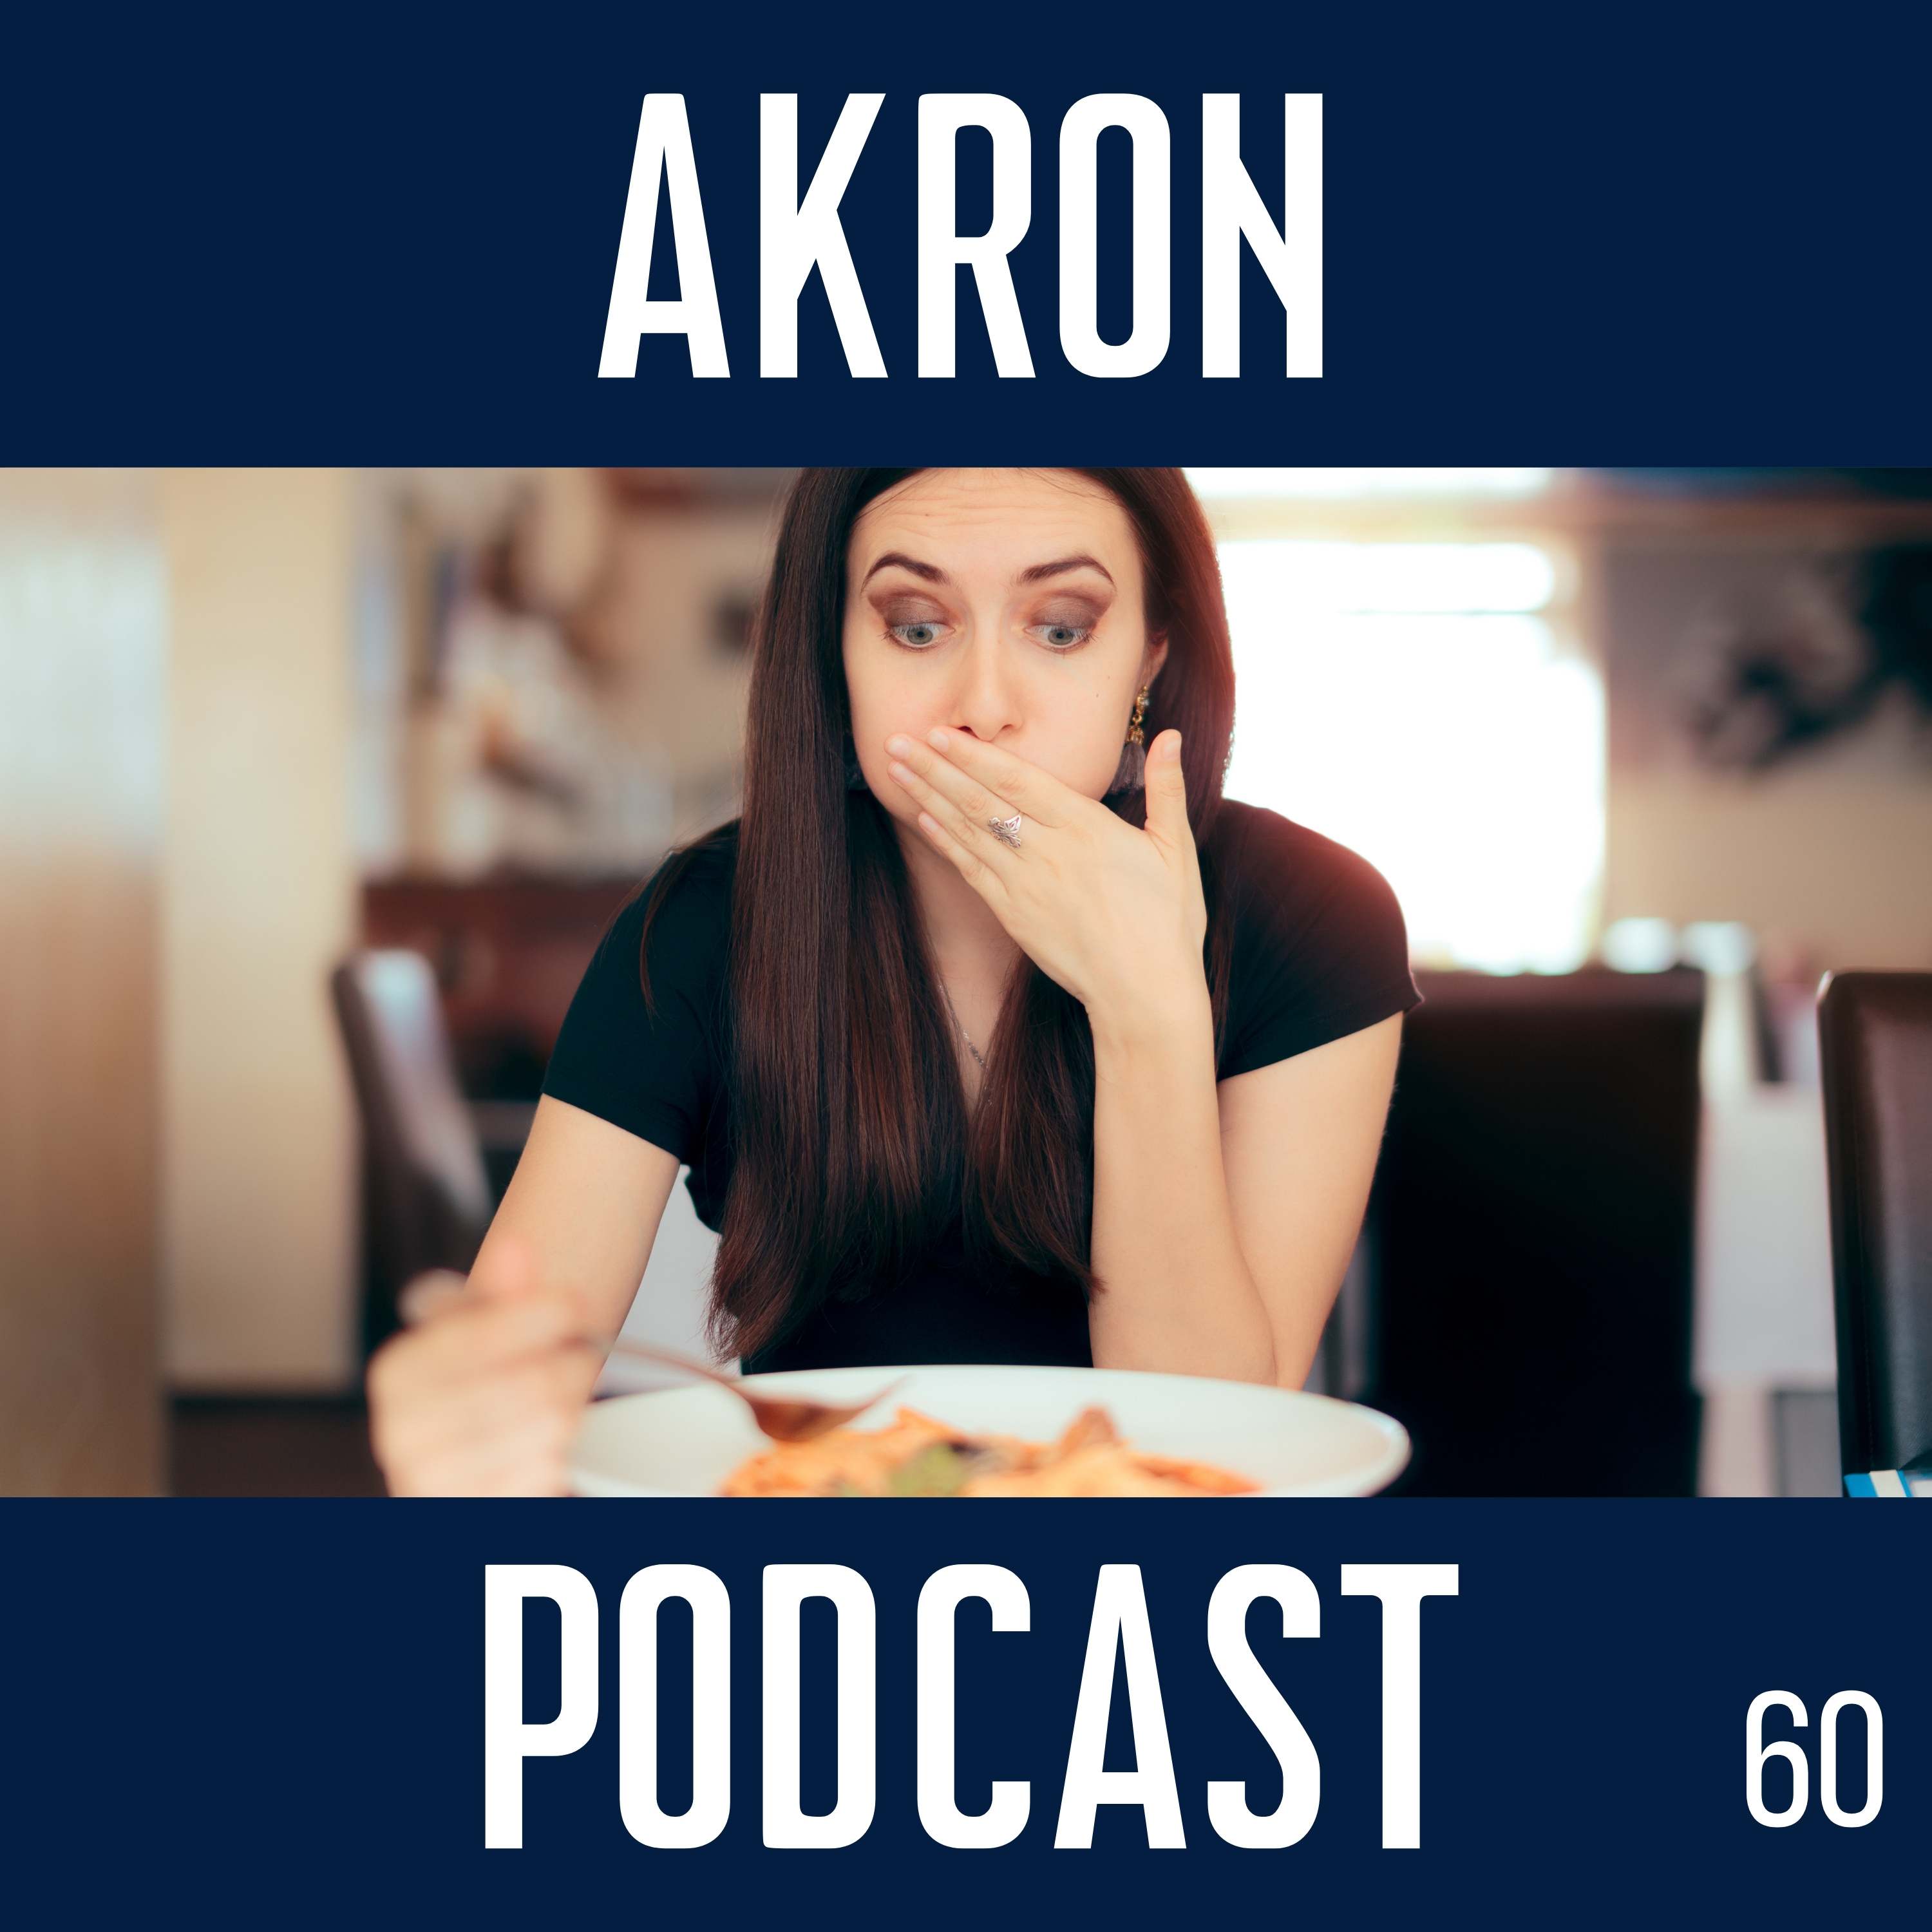 Artwork for podcast Akron Podcast